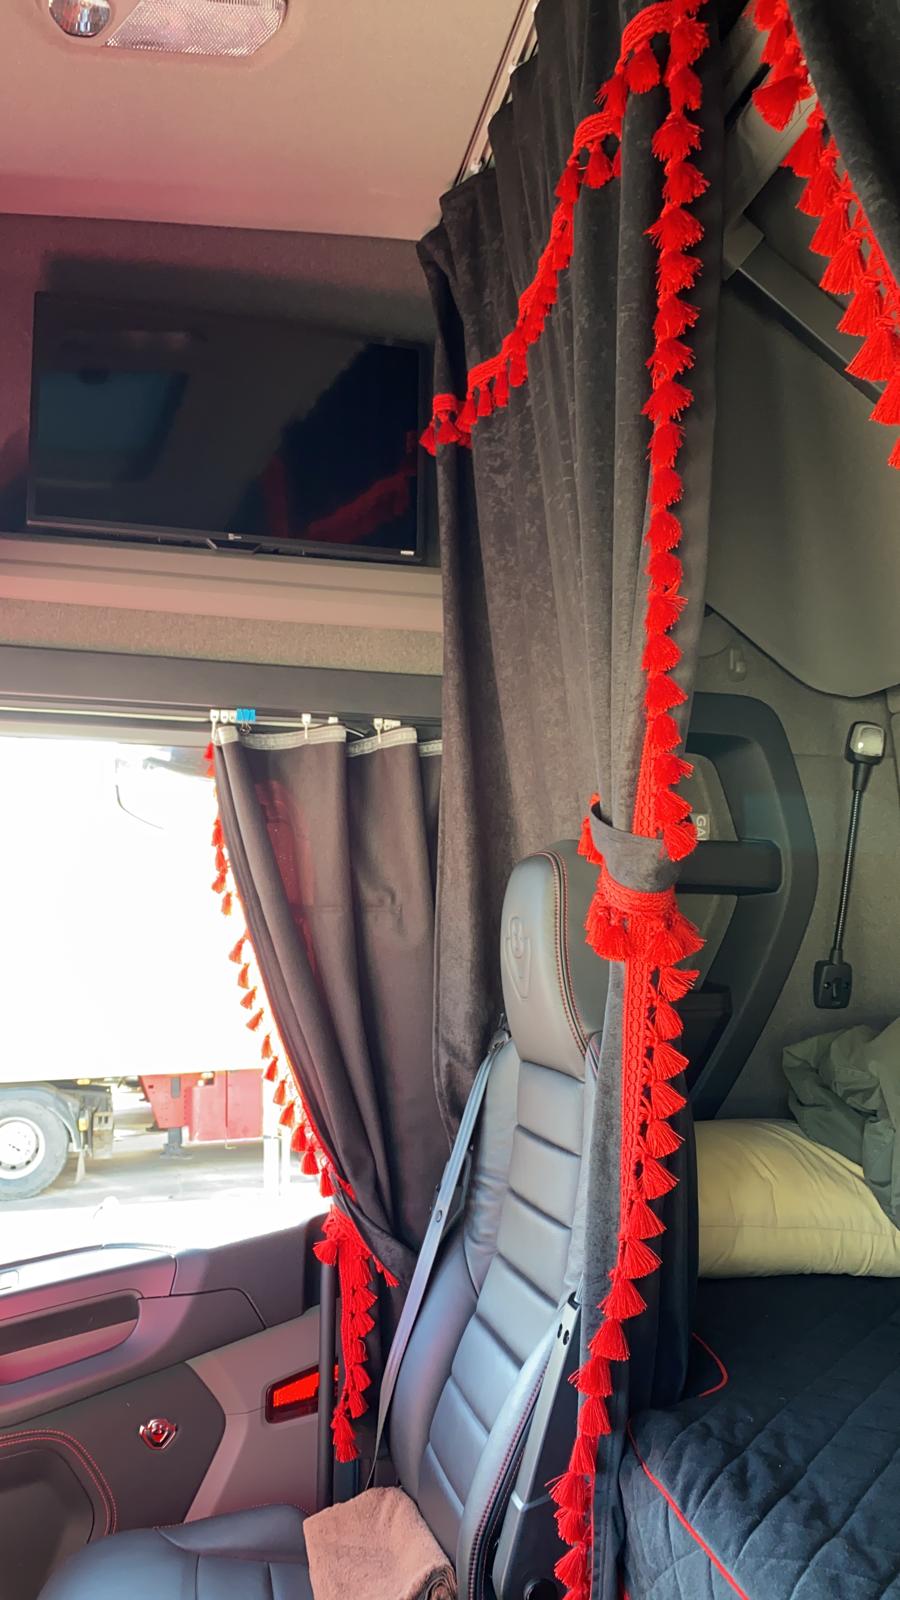 Tessuto Felpato Misura Universale Accessori Decorativi per Camion Sconosciuto Set di 3 Tende Rosse con Pompon Bianchi Tutti i Modelli 